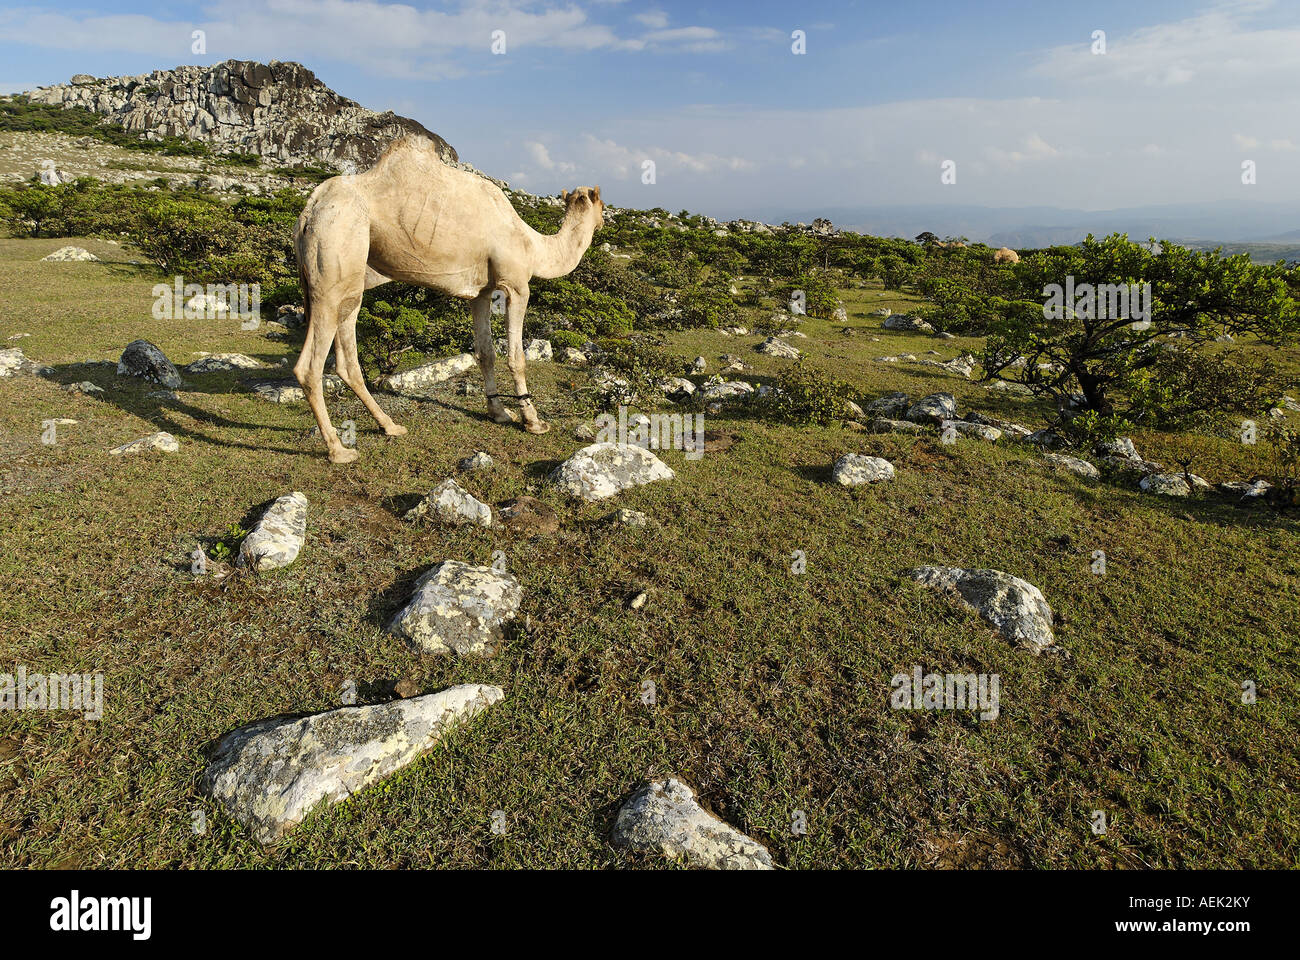 Camel on the highlands of Socotra island, Yemen Stock Photo